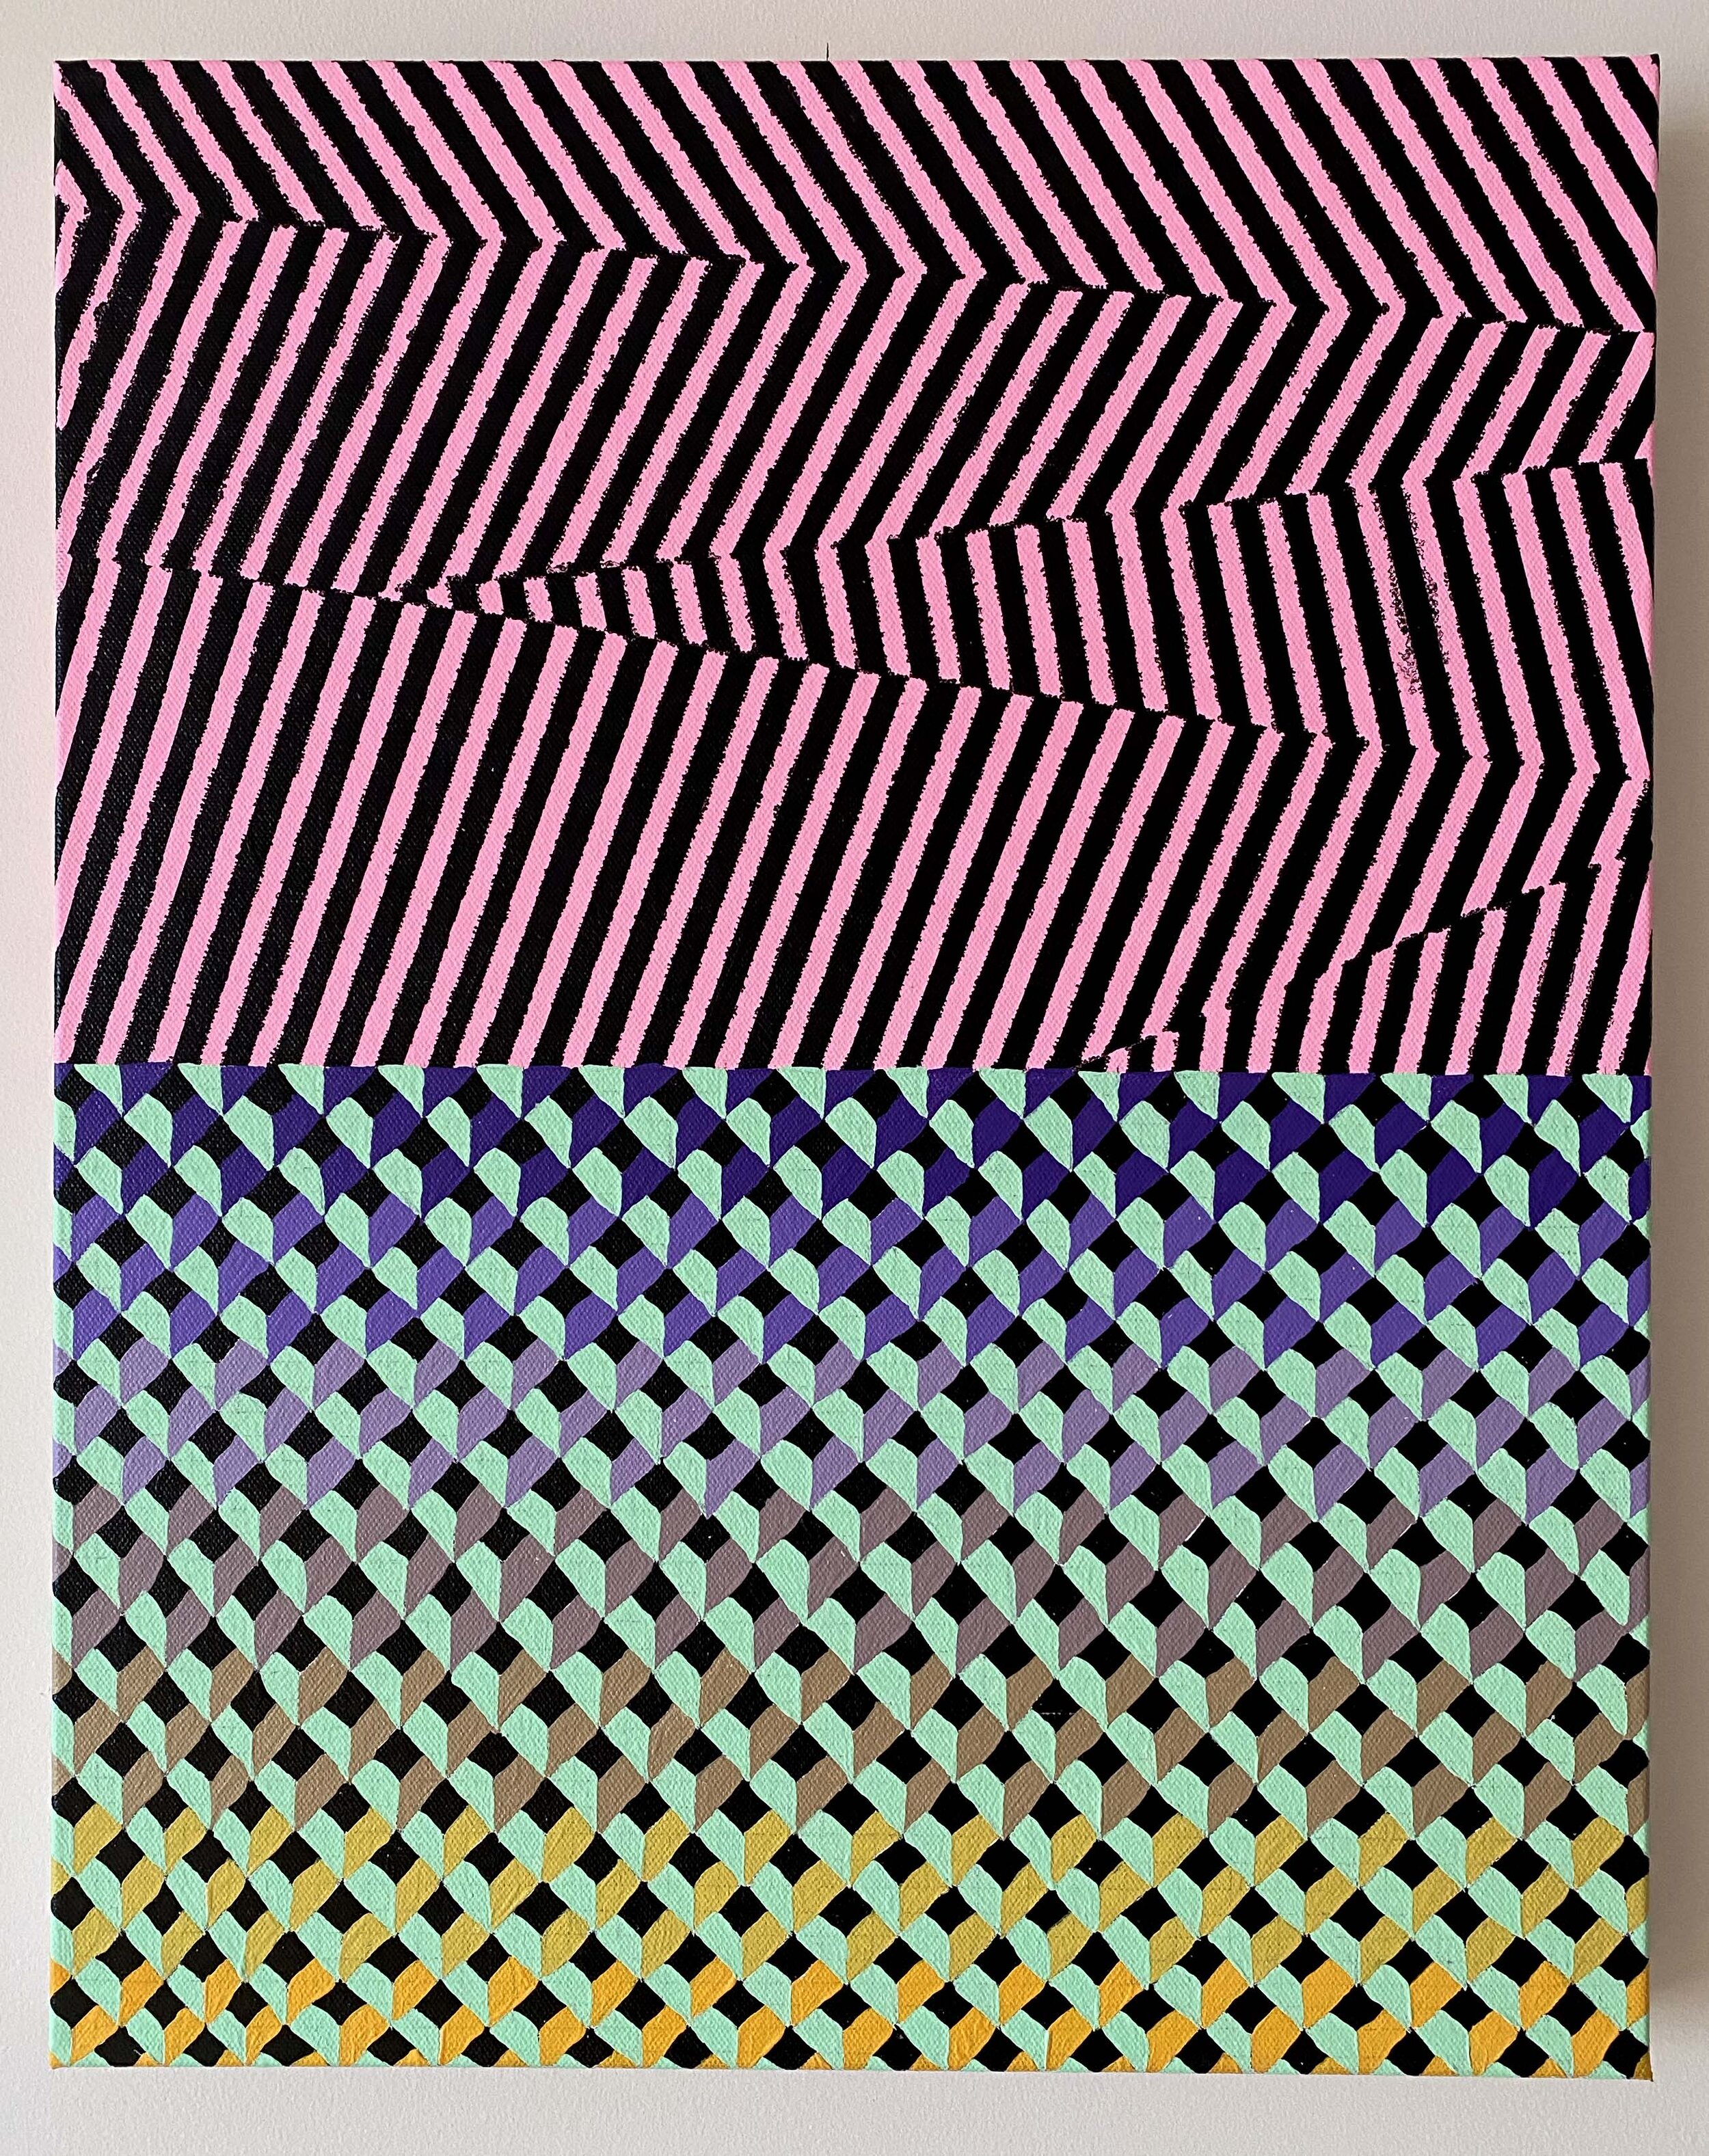  NY2004, 20" X 16", acrylic on canvas, 2020 